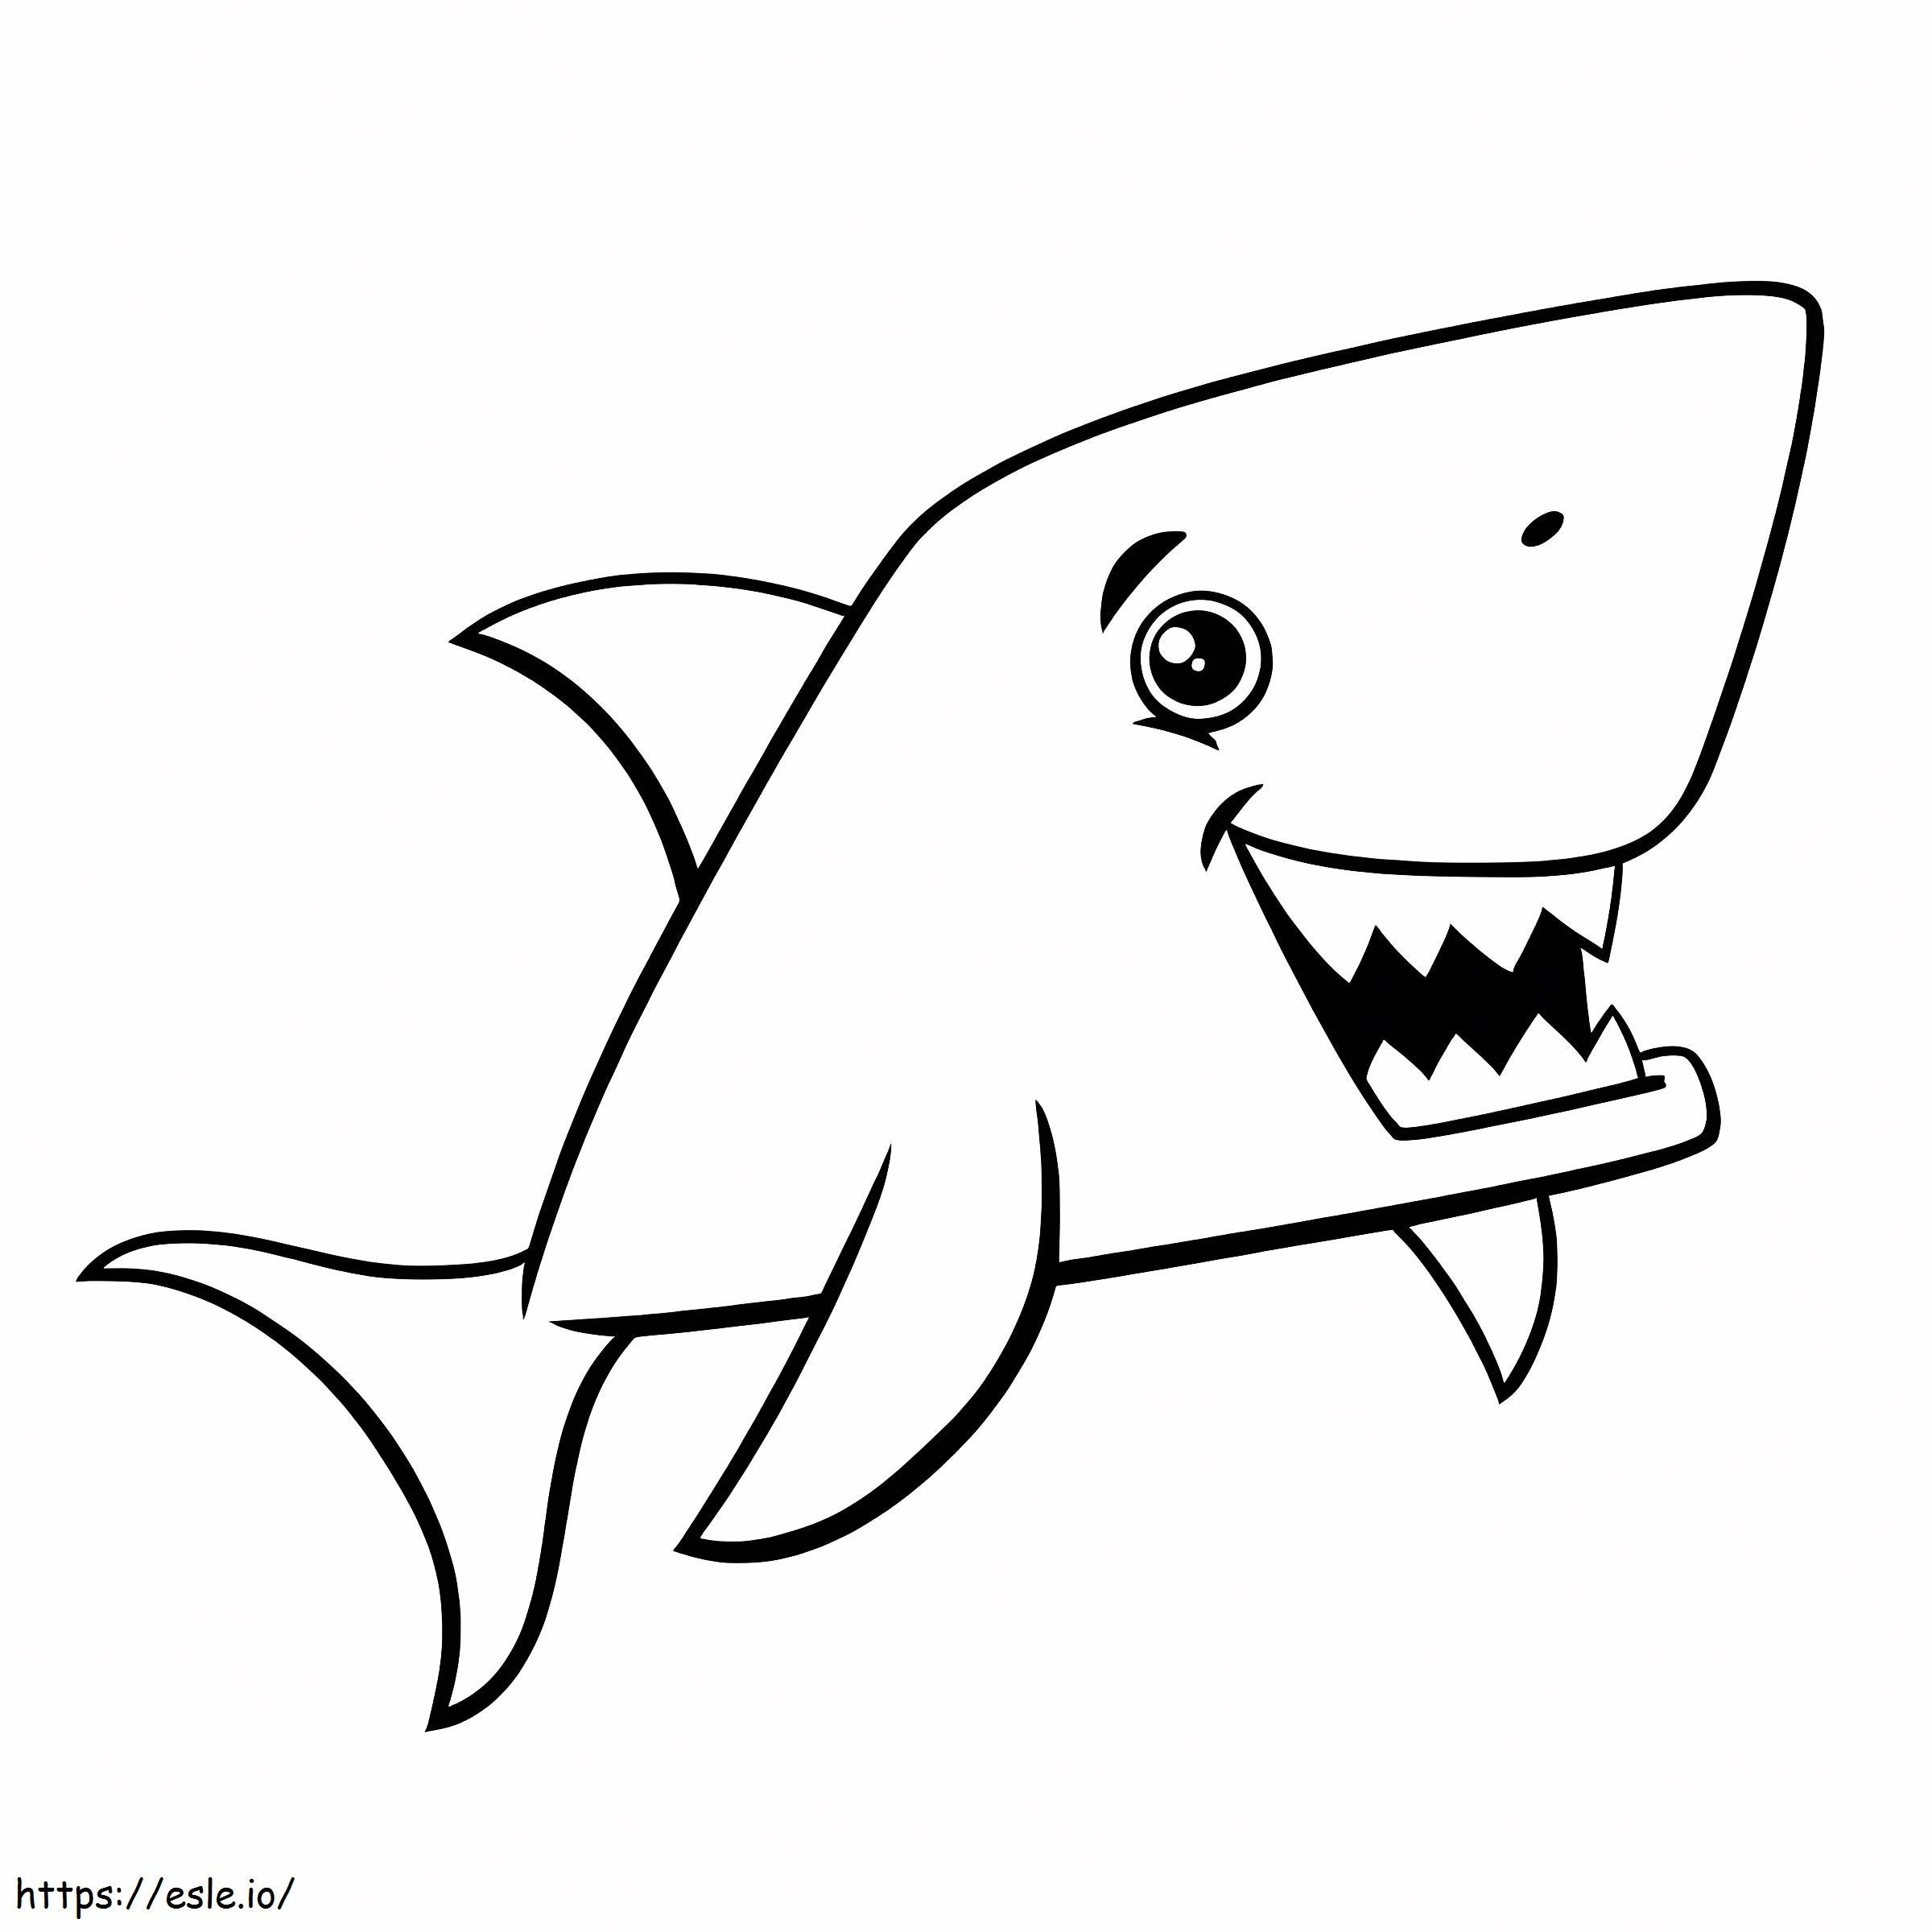 Tiburón de dibujos animados para colorear